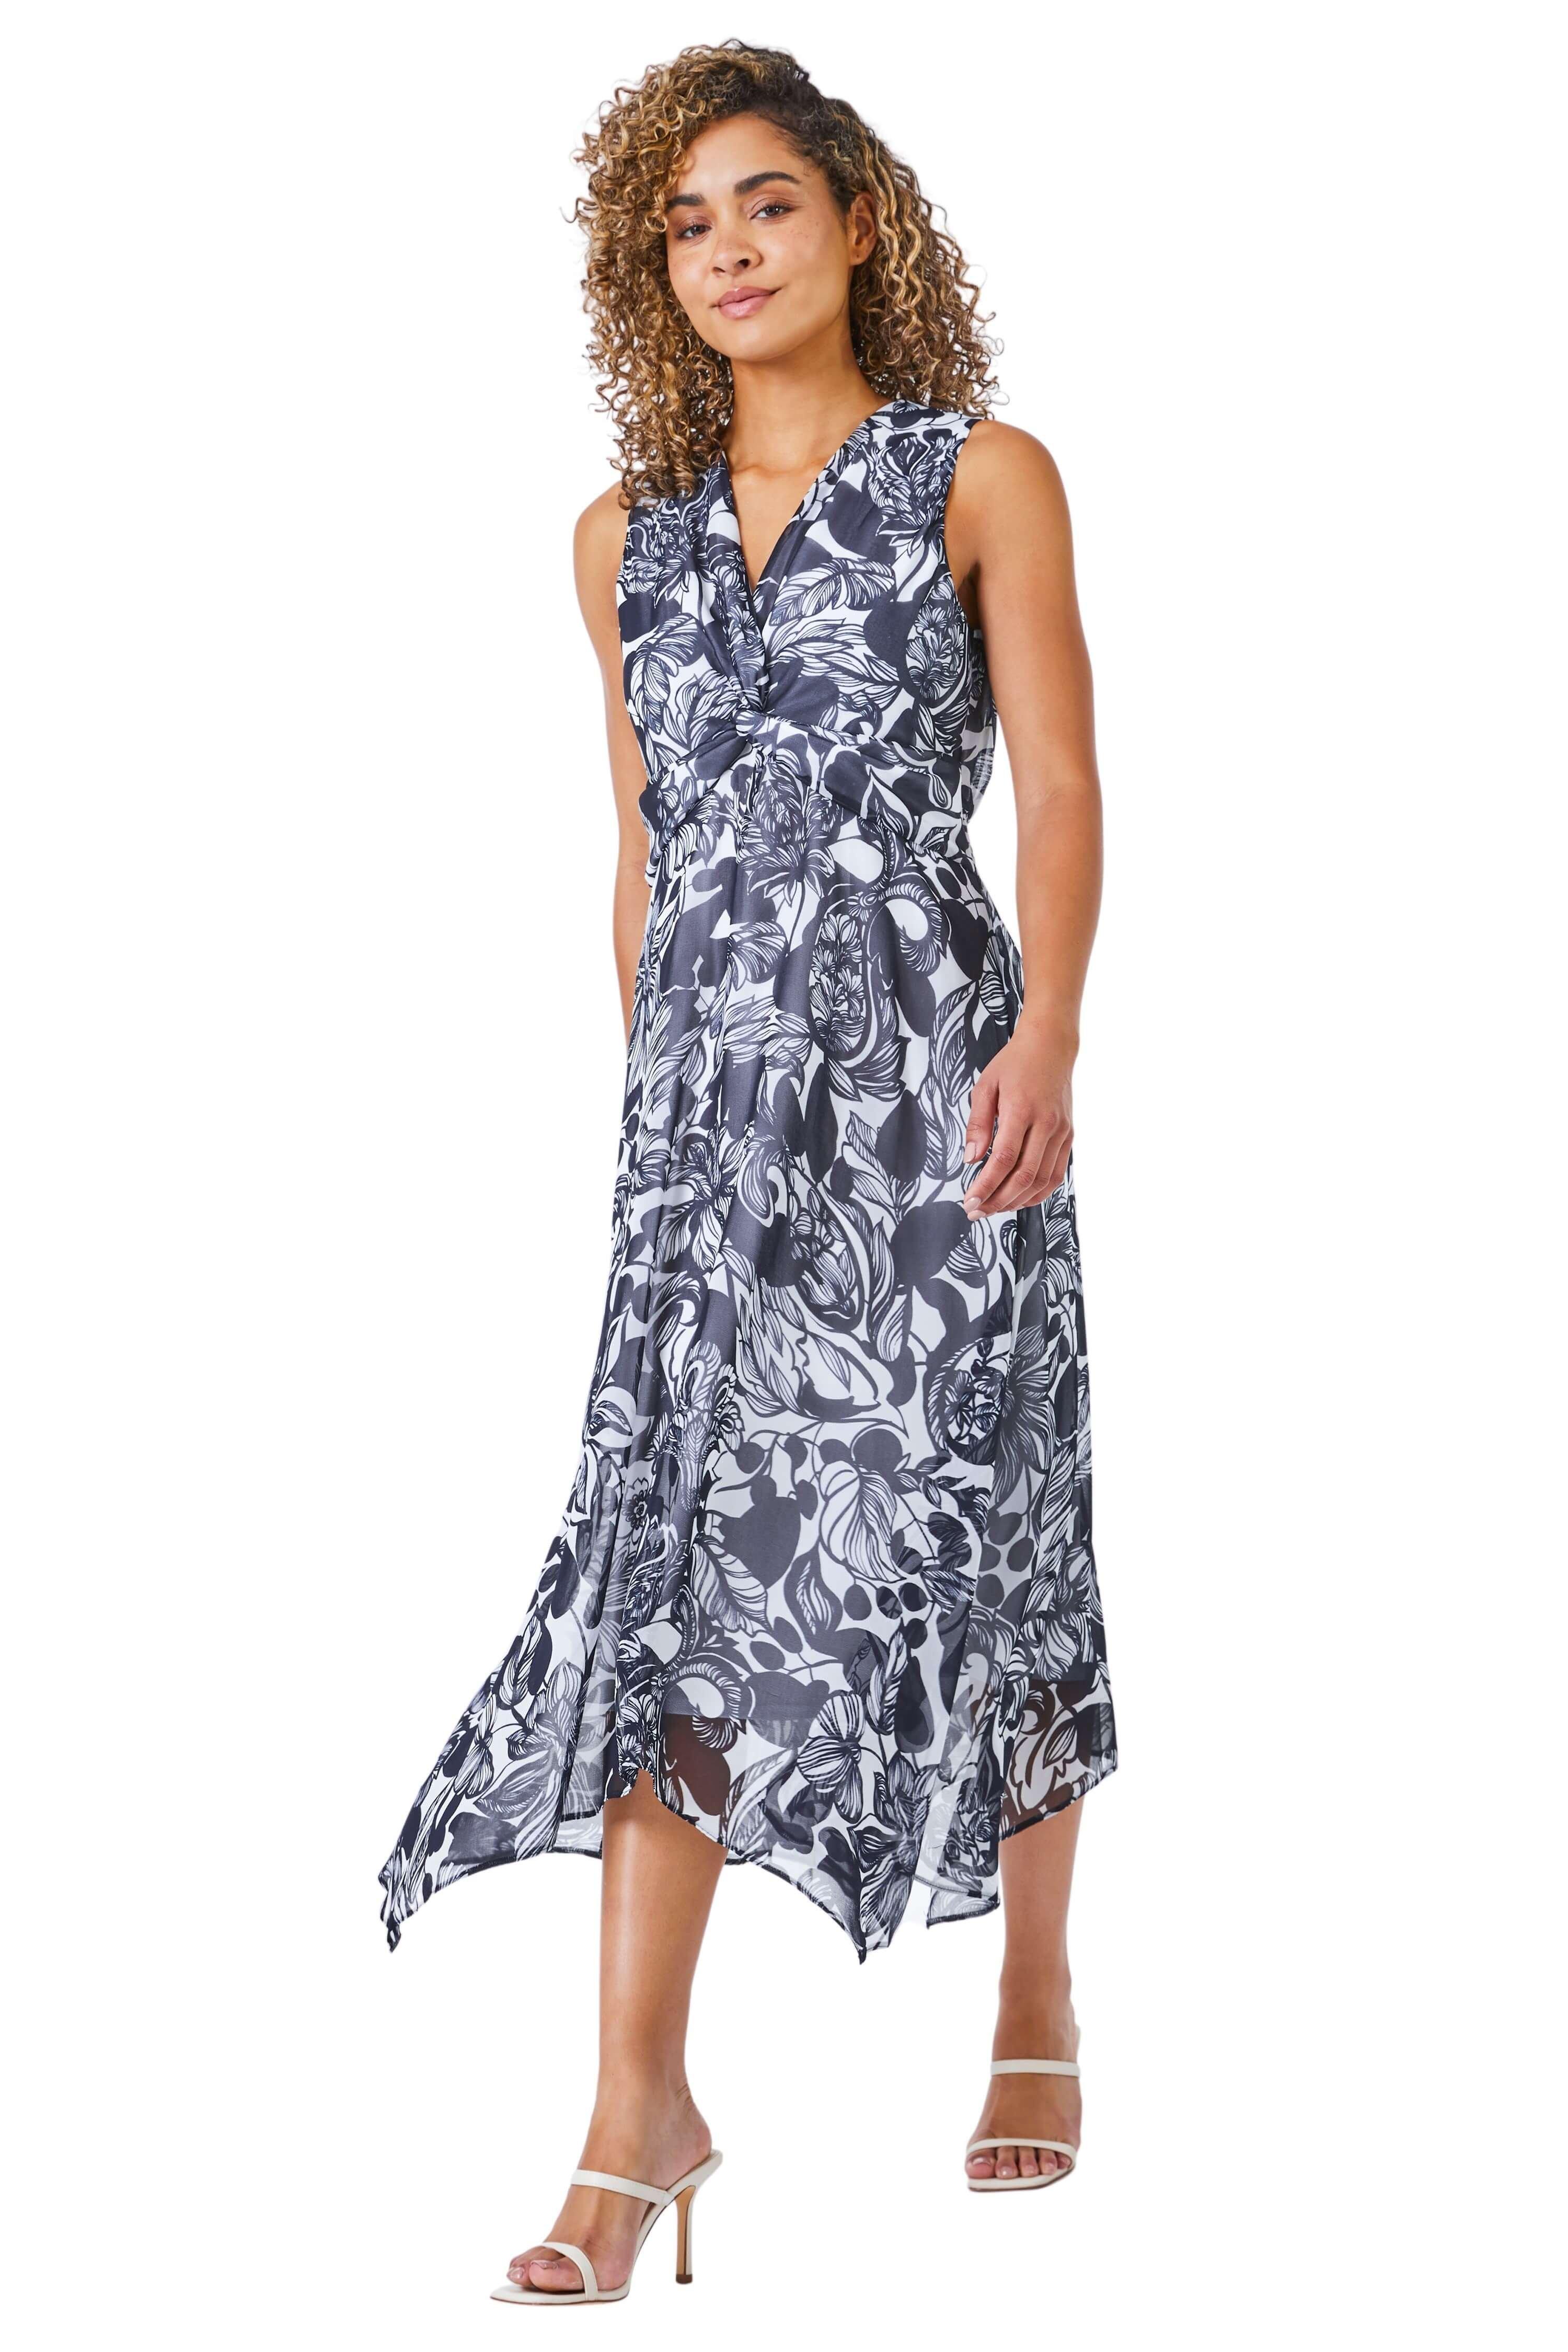 Миниатюрное платье с контрастным цветочным принтом и платком на подоле Roman, синий мини платье с цветочным принтом sl w1292 белый 44